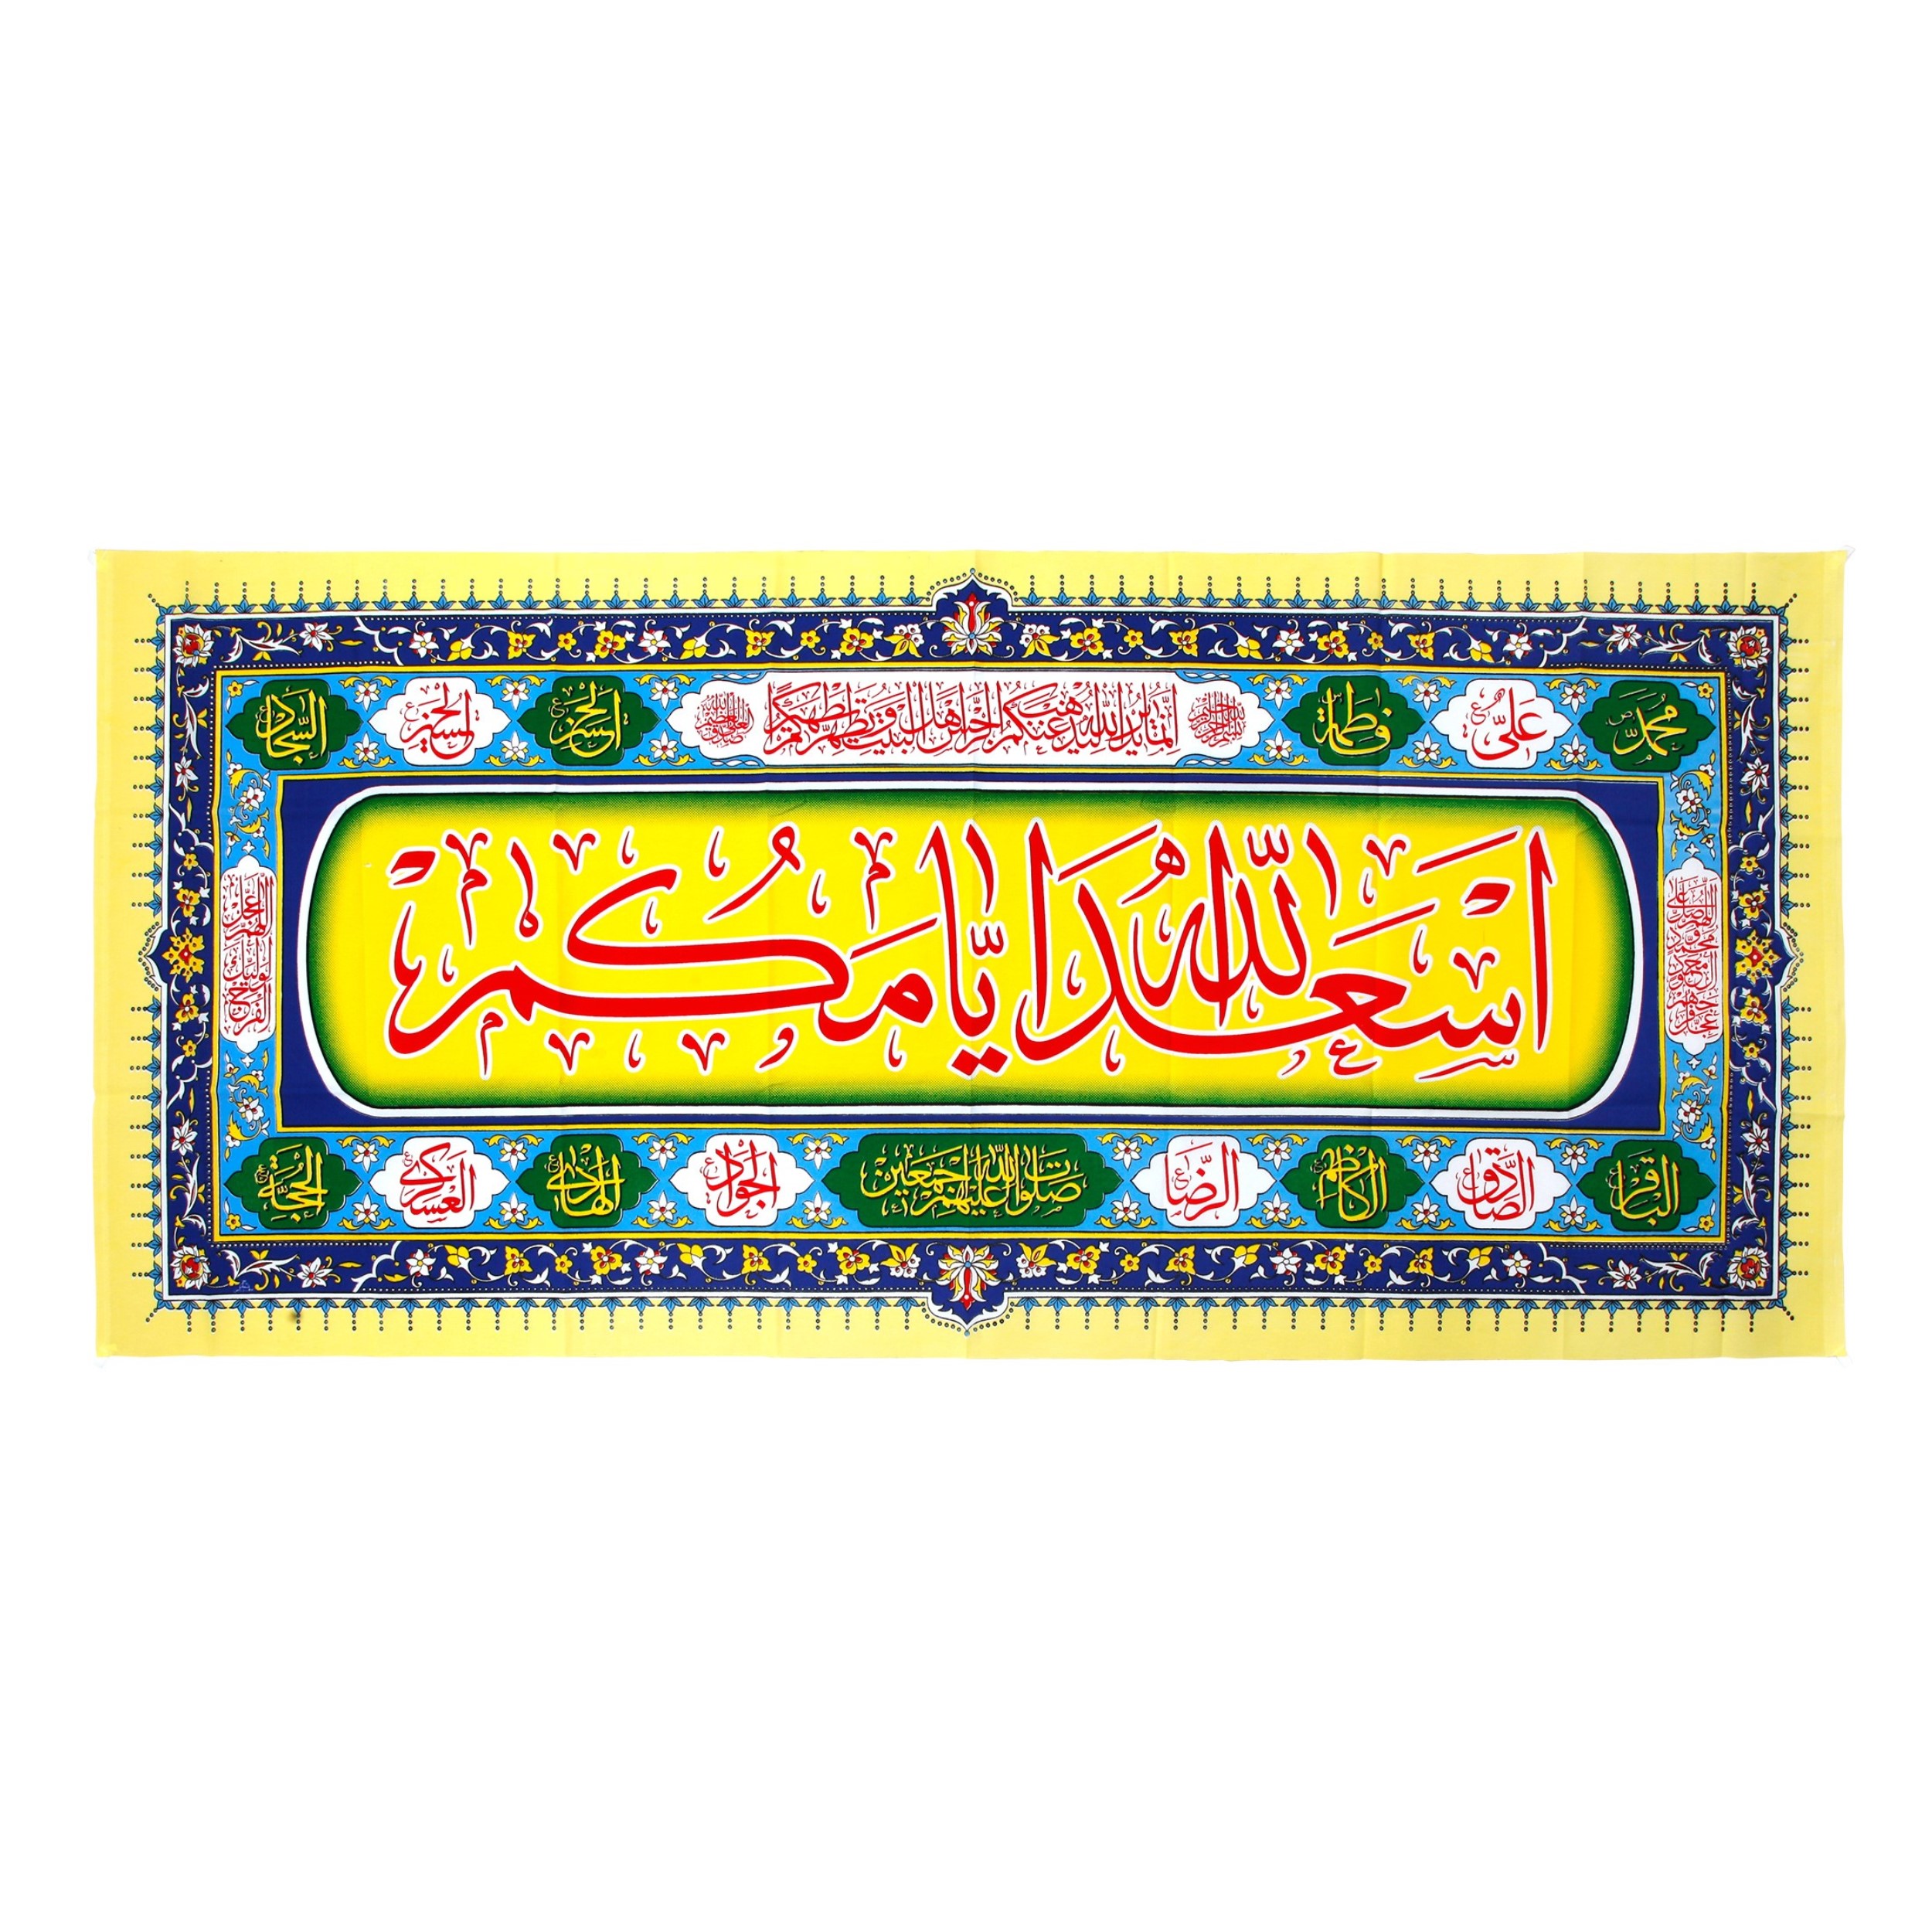 پرچم طرح اعیاد مذهبی اسعد الله ایامکم کد 40001245